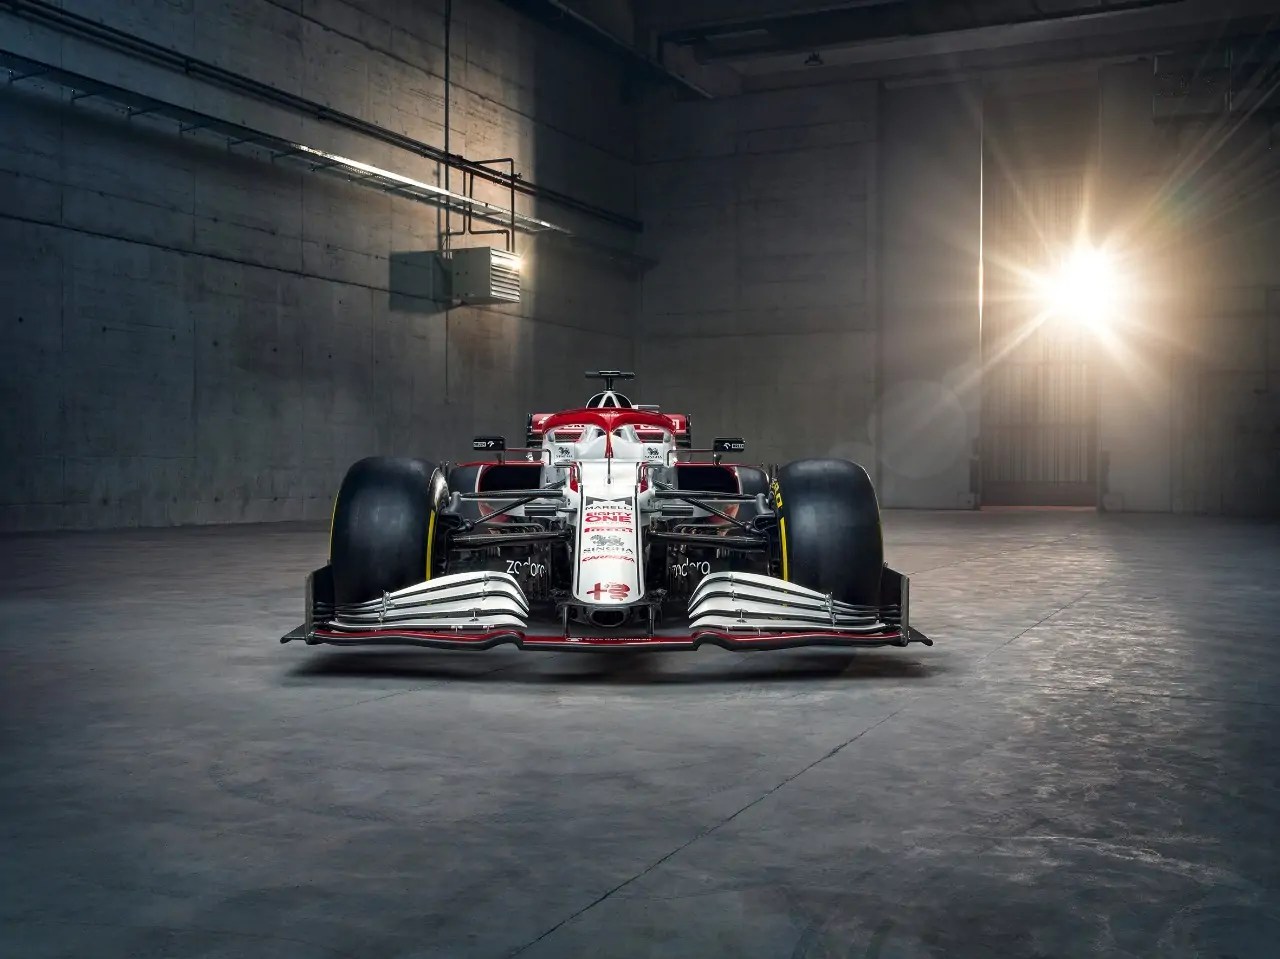 أعلنت ألفا روميو انها ستكون الراعي الرئيسي لفريق ساوبر السويسري للـ F1 ابتداء من موسم 2018 